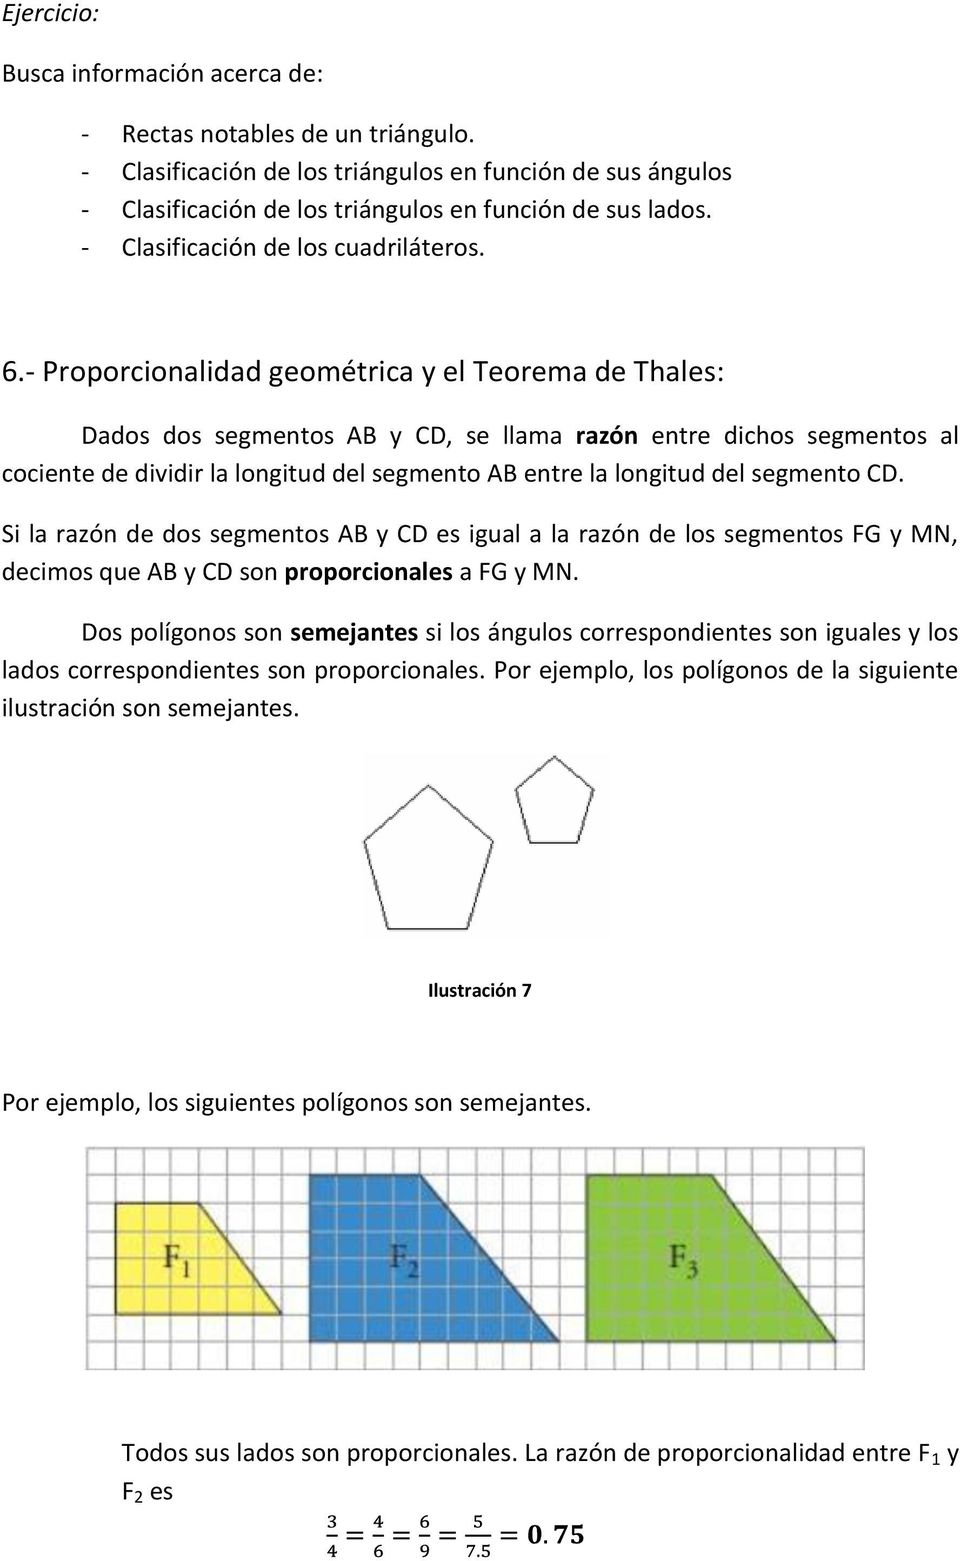 - Proporcionalidad geométrica y el Teorema de Thales: Dados dos segmentos AB y CD, se llama razón entre dichos segmentos al cociente de dividir la longitud del segmento AB entre la longitud del